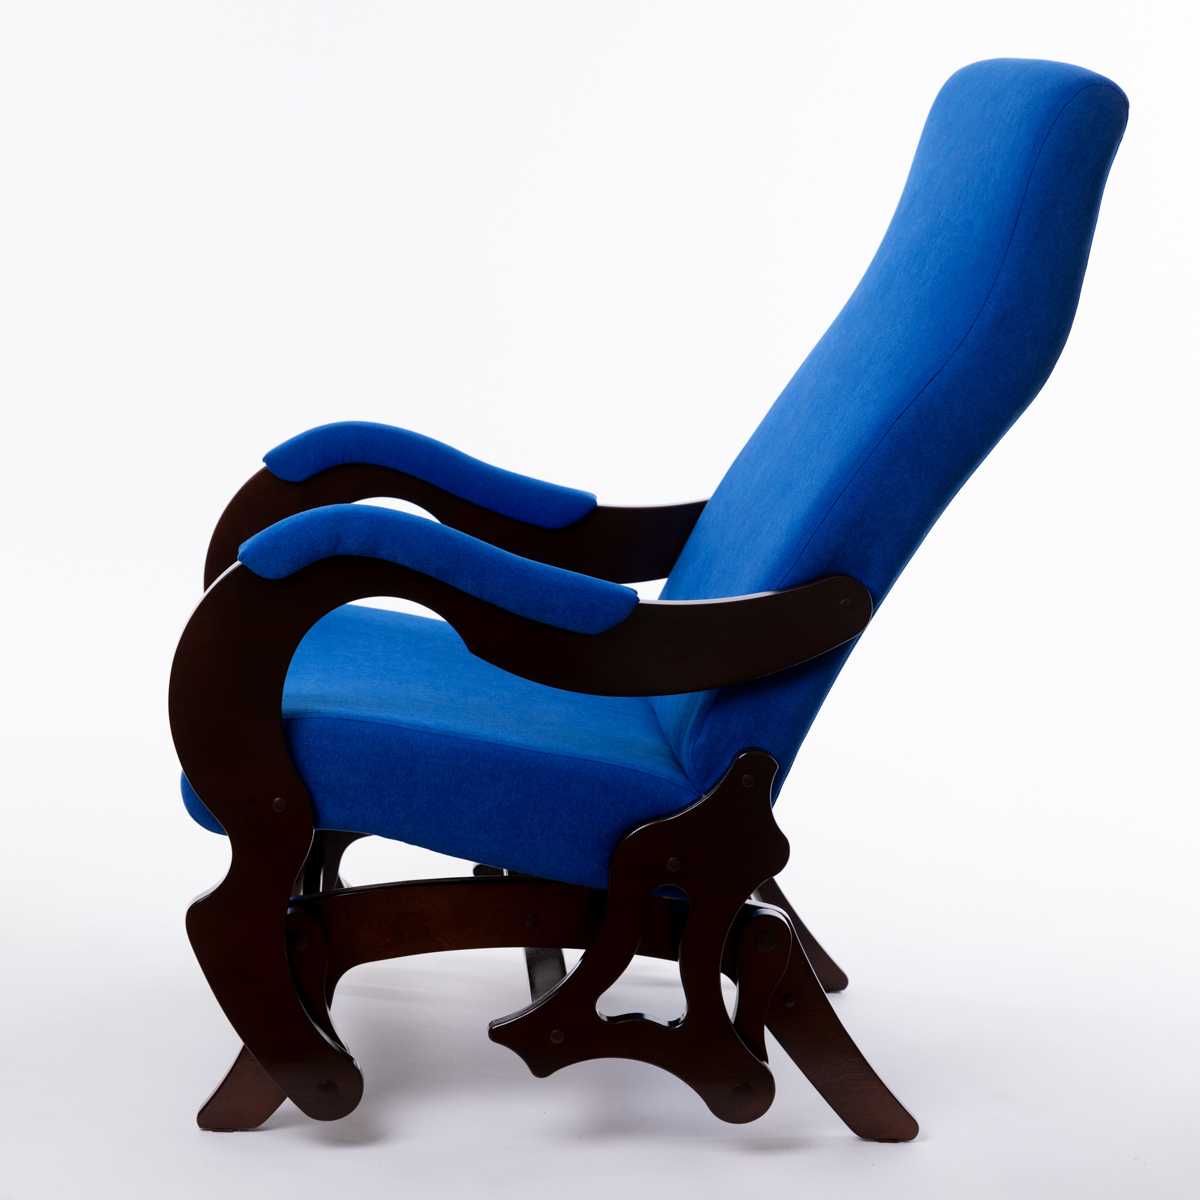 Кресло качалка с маятниковым механизмом и фиксатором. делаем кресло-качалку своими руками: модели из дерева и пластика